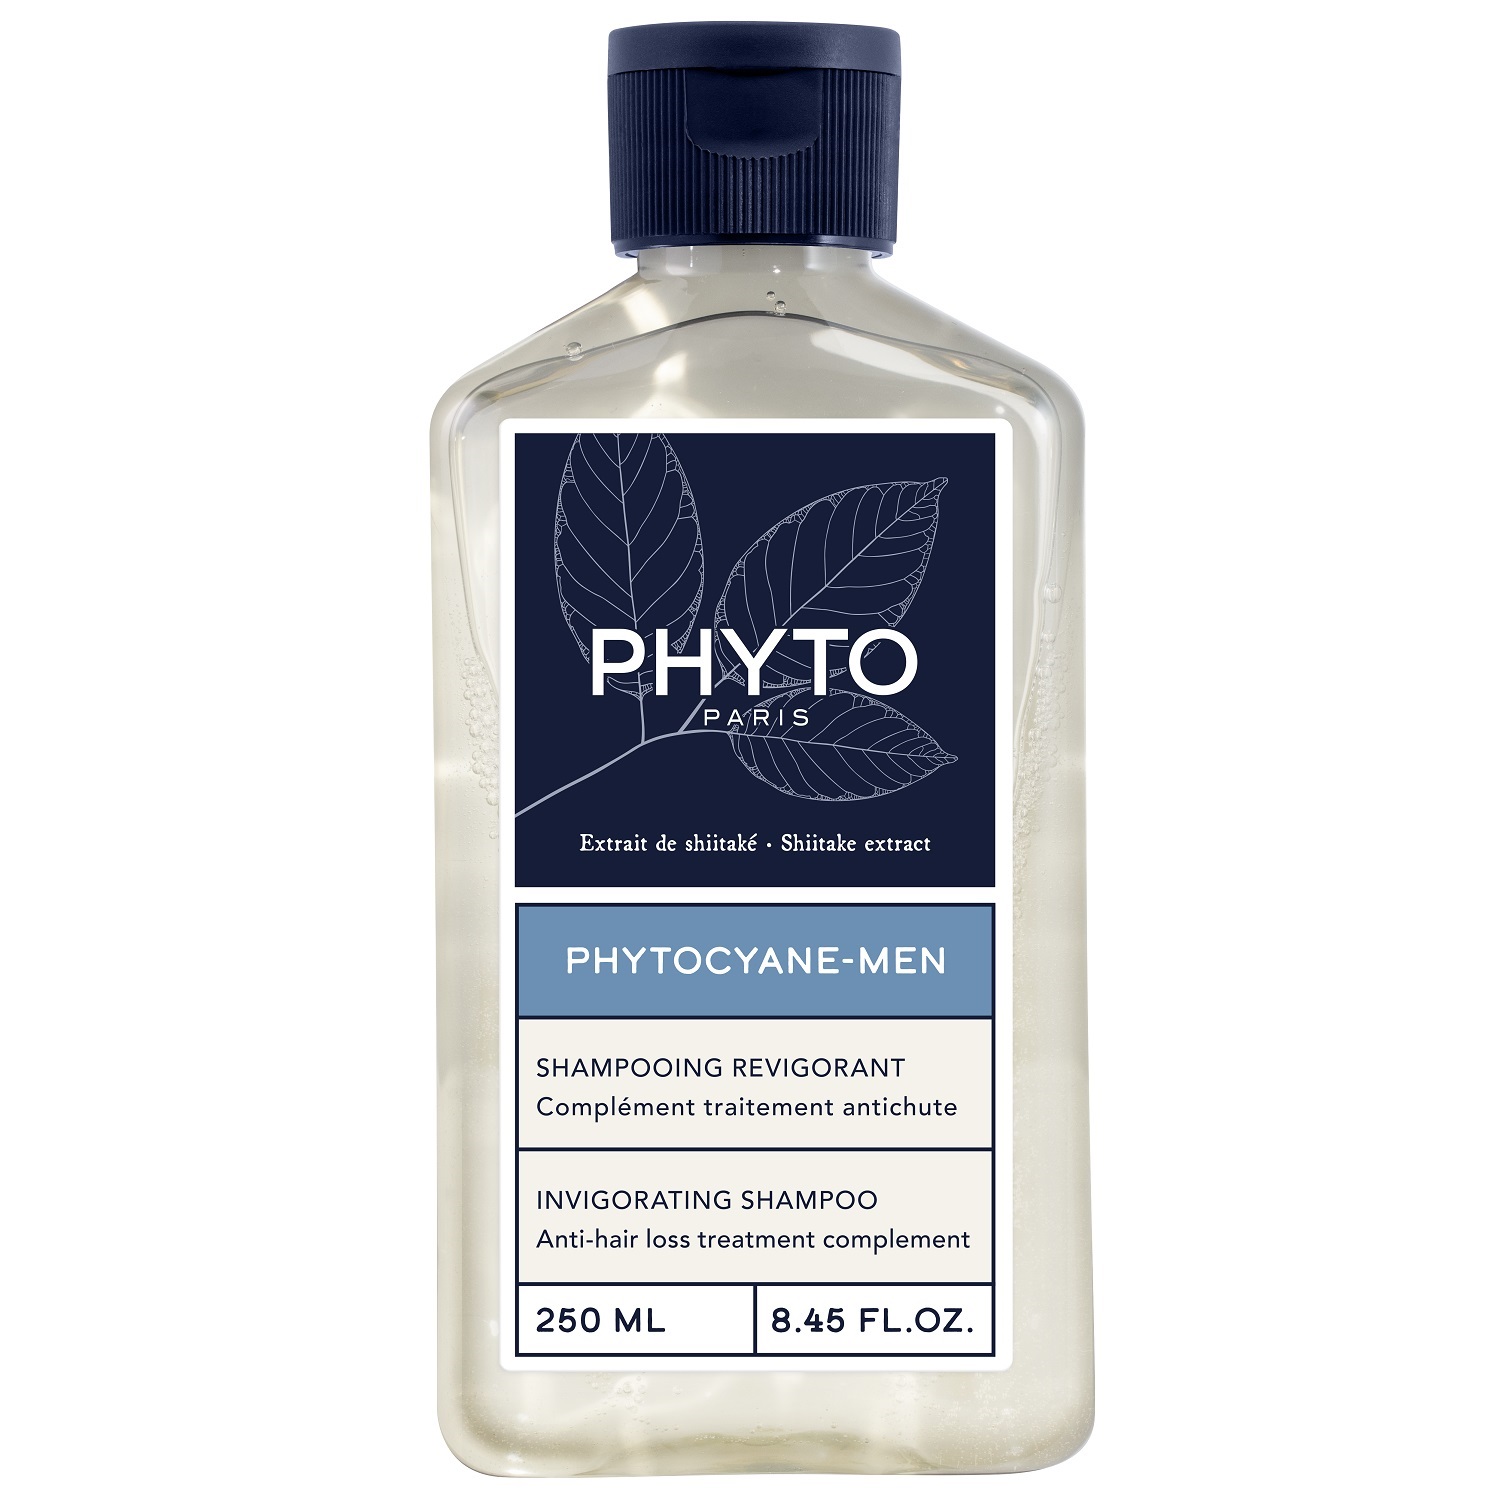 Phyto Мужской укрепляющий шампунь для волос, 250 мл (Phyto, Phytocyane) цена и фото